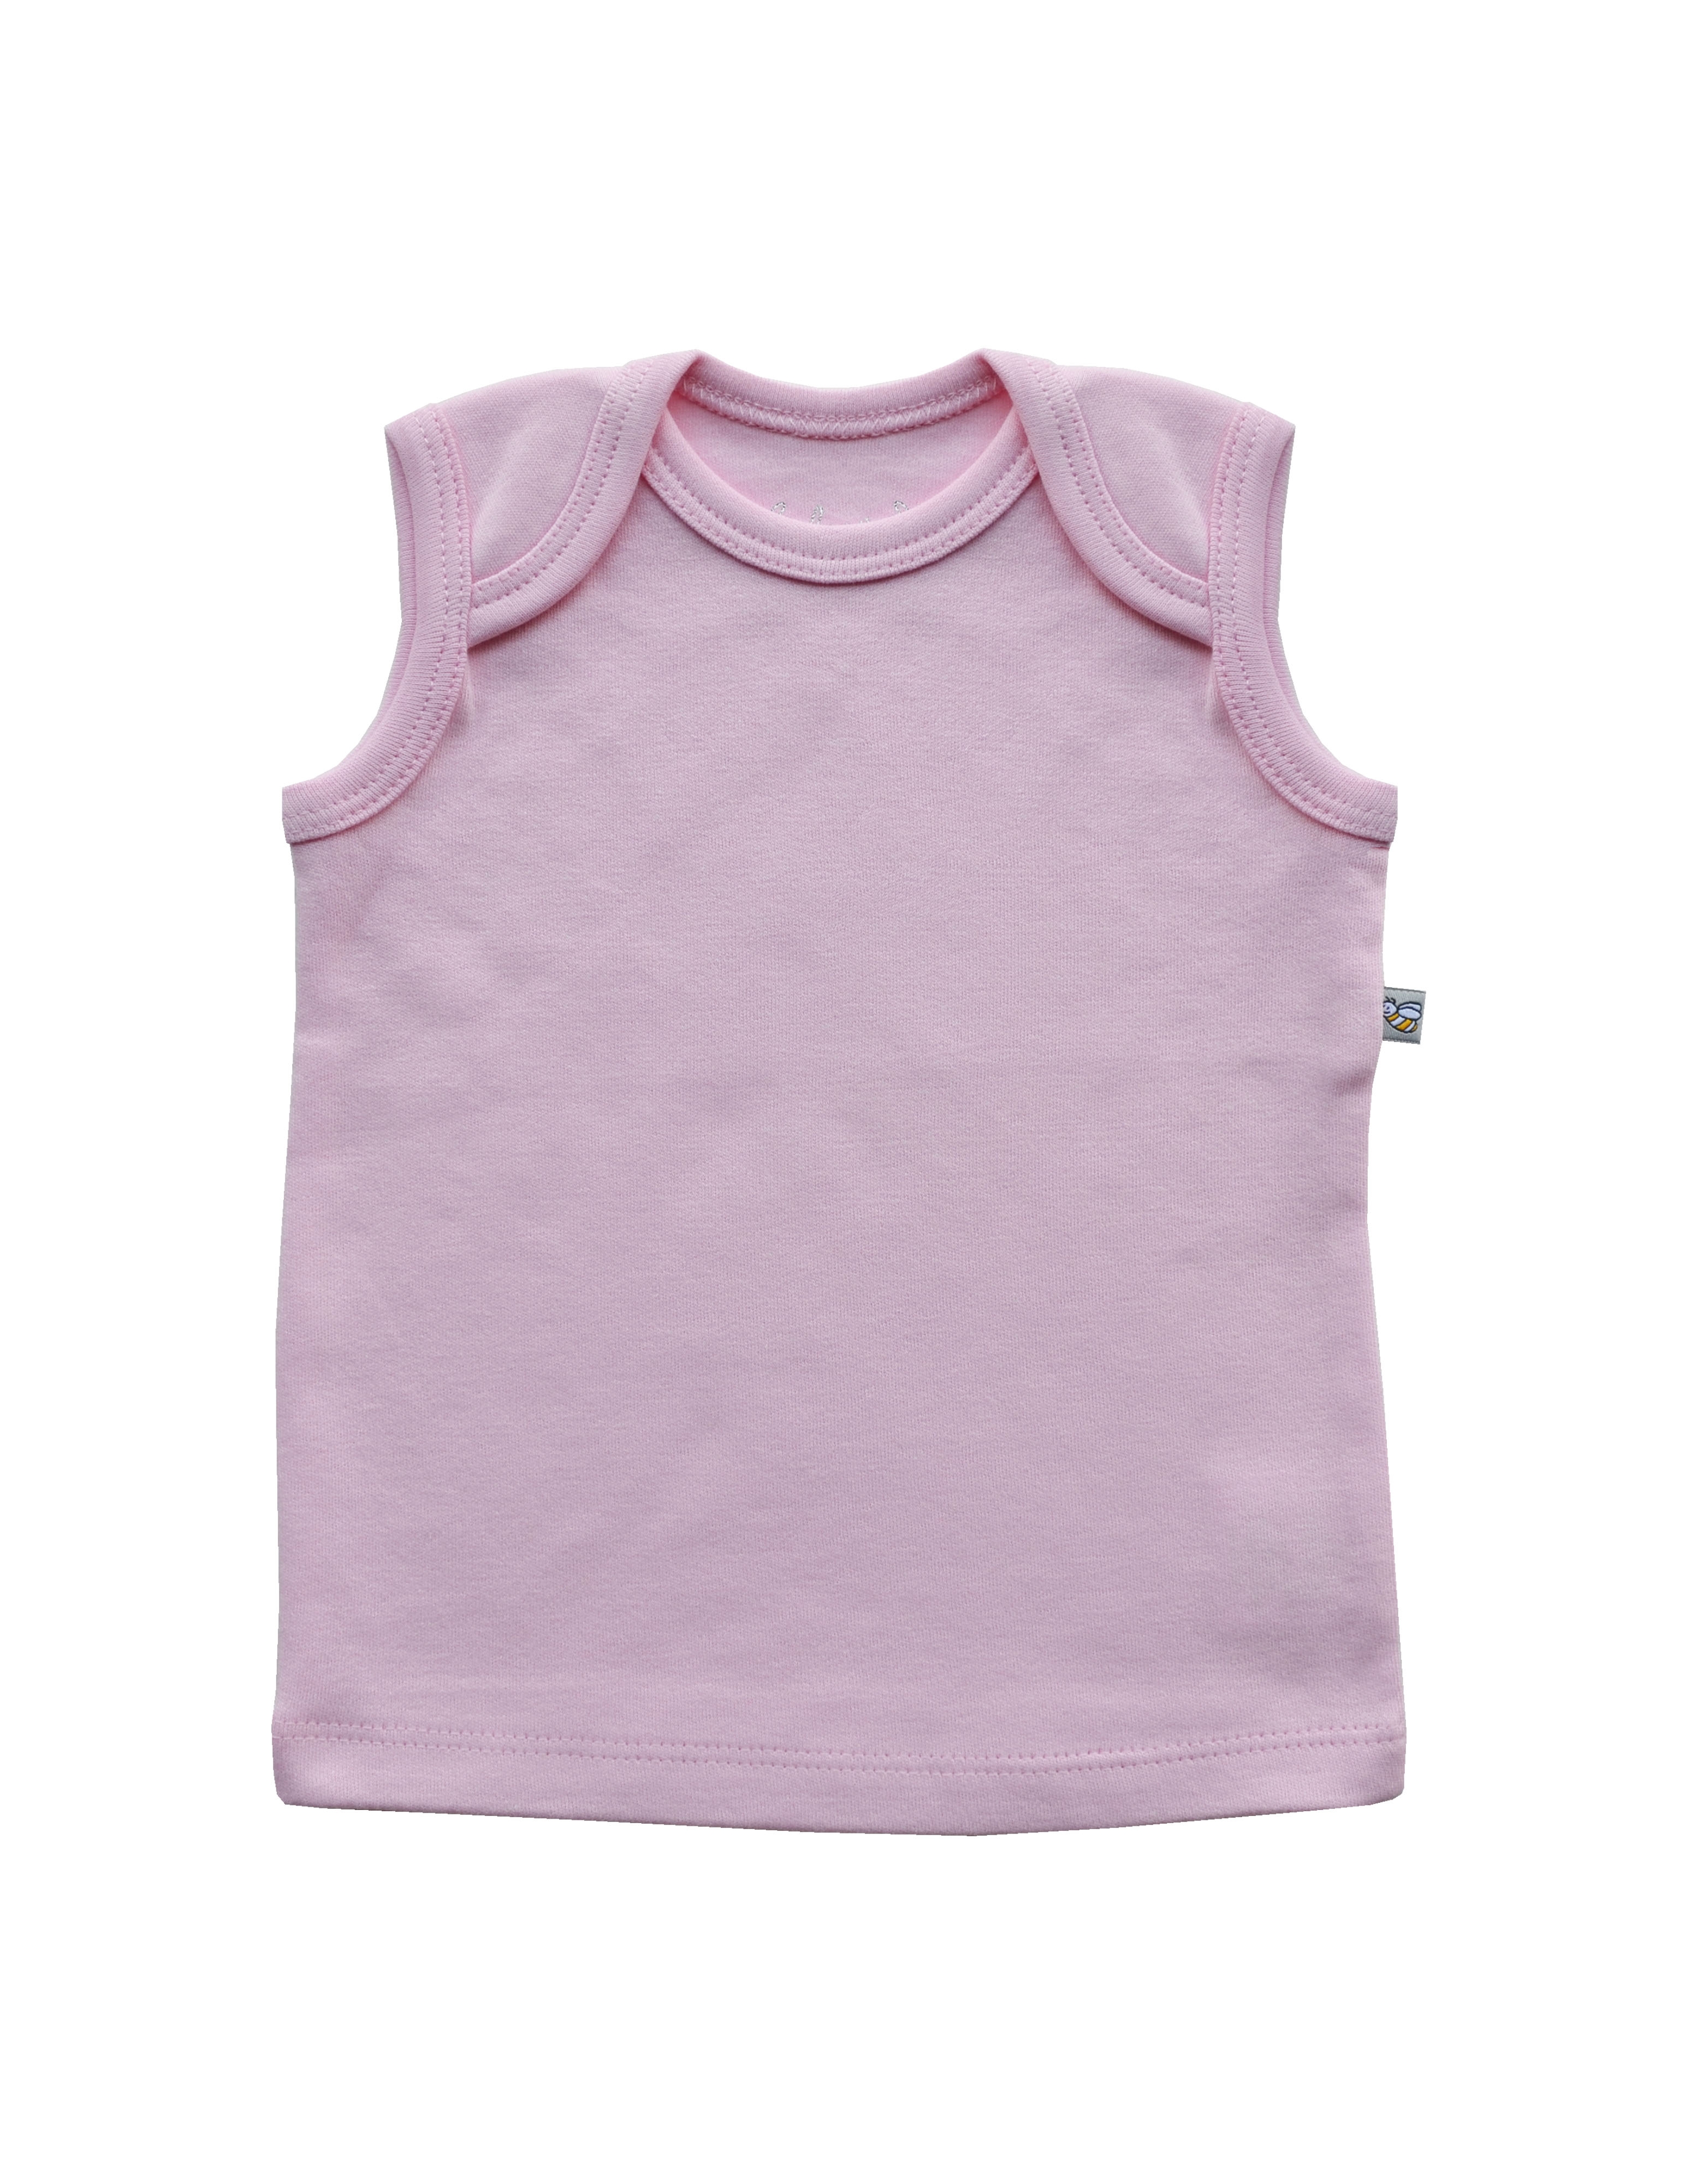 Babeez | Pink Vest (100% Cotton Interlock Biowash) undefined